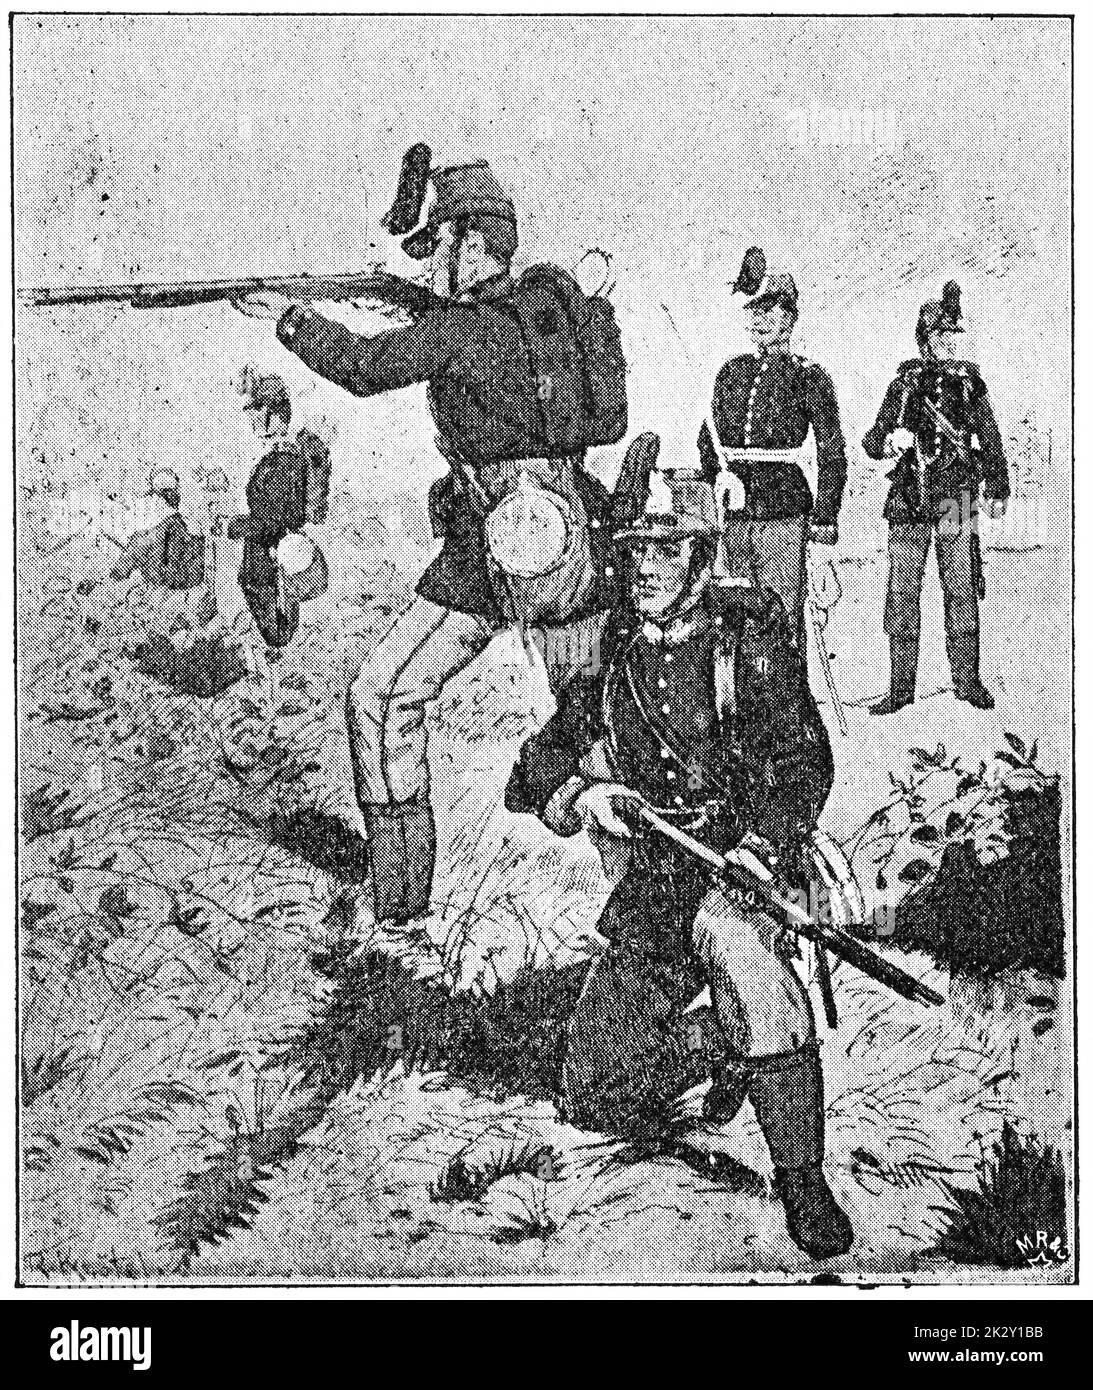 Infanterie légère hanoverienne (1867). Illustration du 19e siècle. Allemagne. Arrière-plan blanc. Banque D'Images